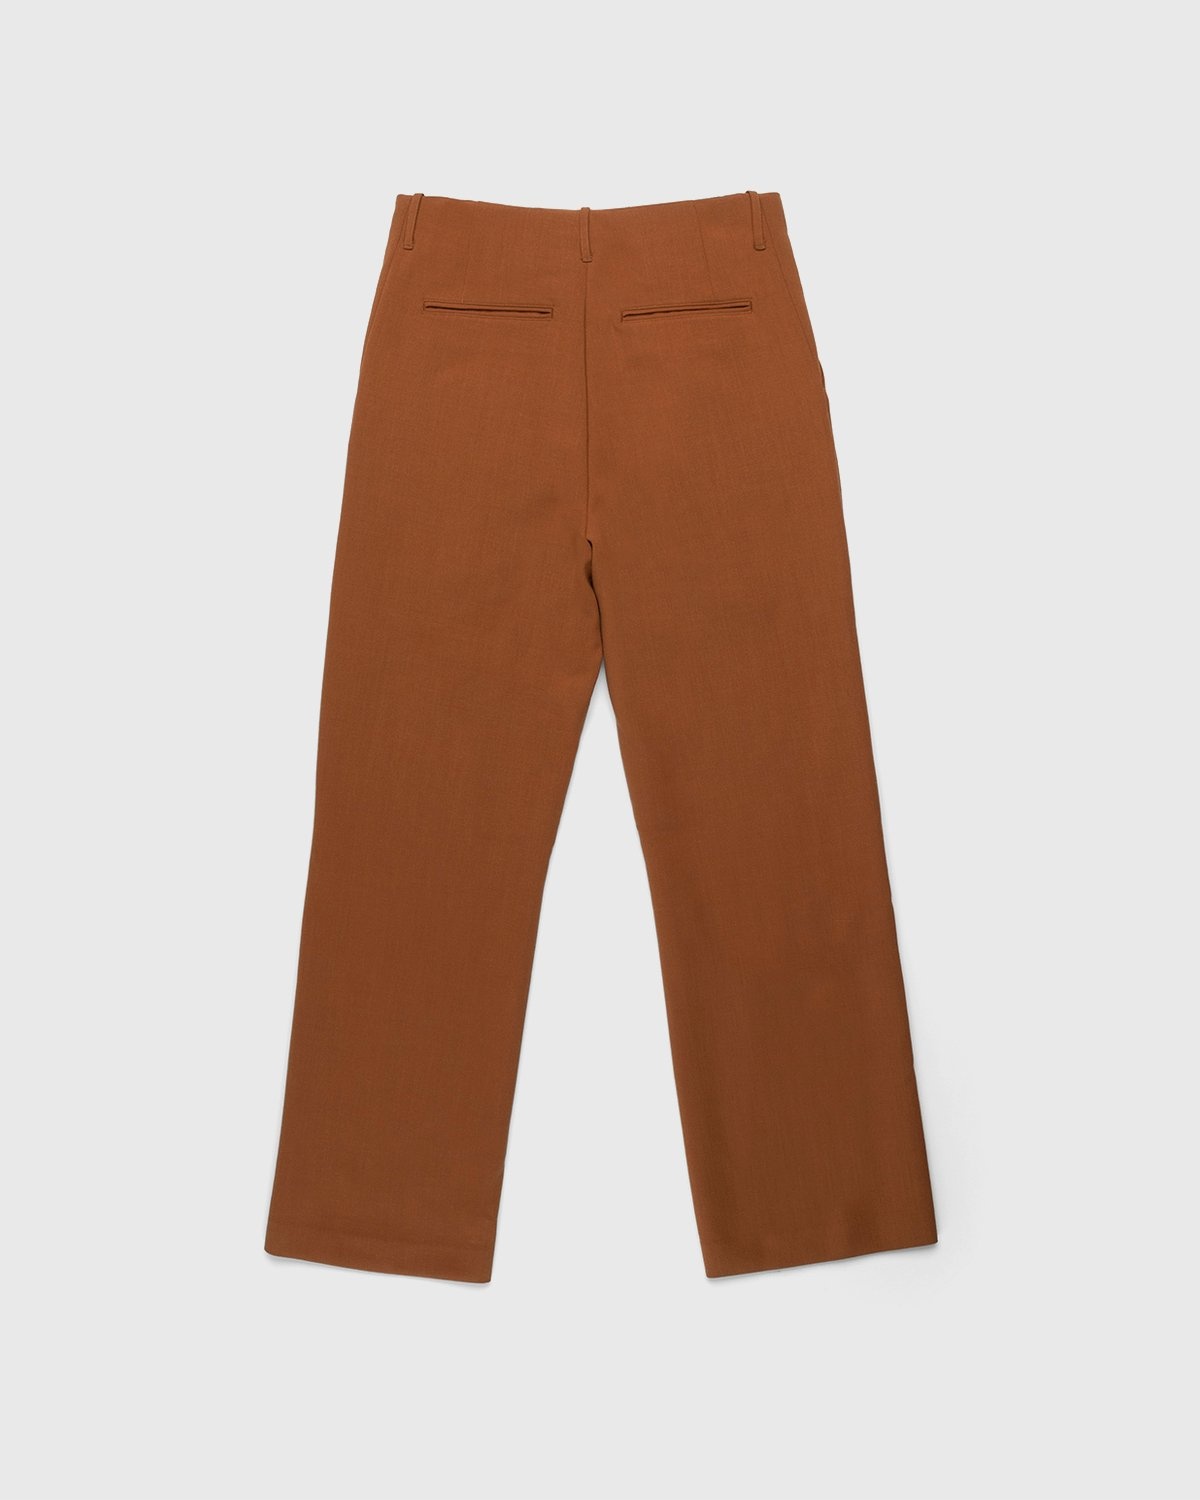 Auralee – Ultra-Fine Wool Pants Dark Orange - Pants - Orange - Image 2